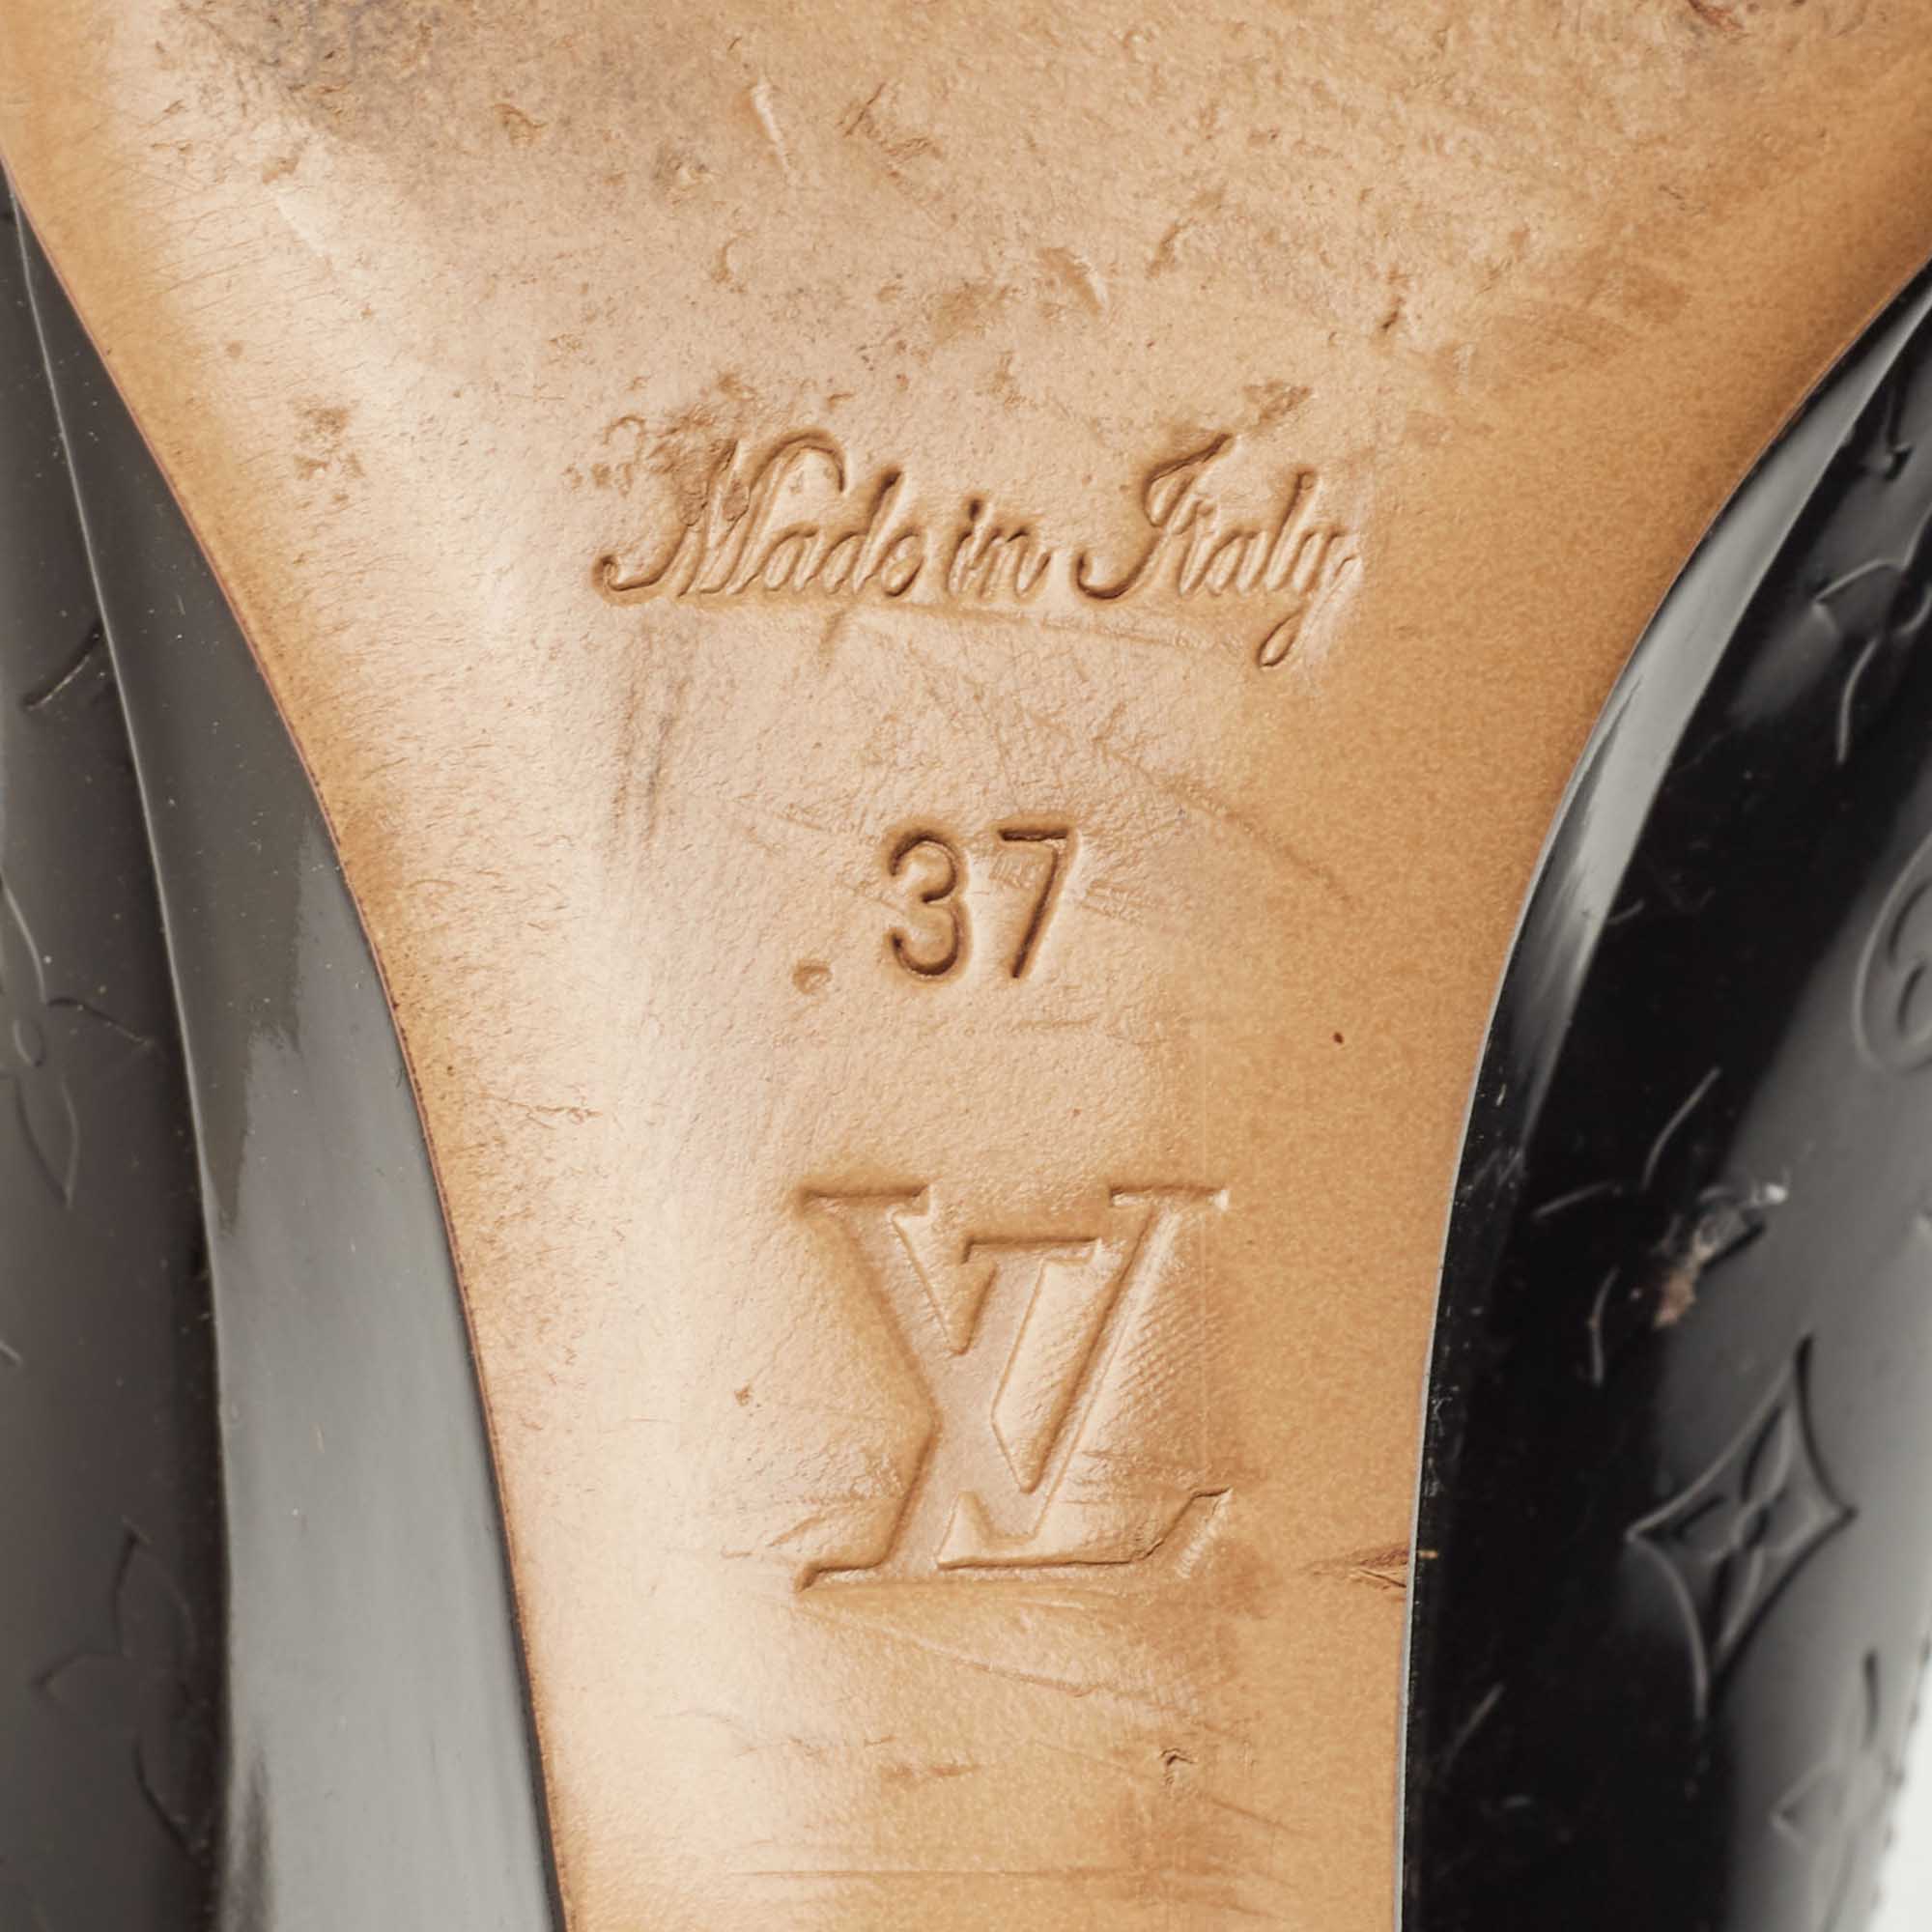 Louis Vuitton Black Patent Leather Wedge Pumps Size 37